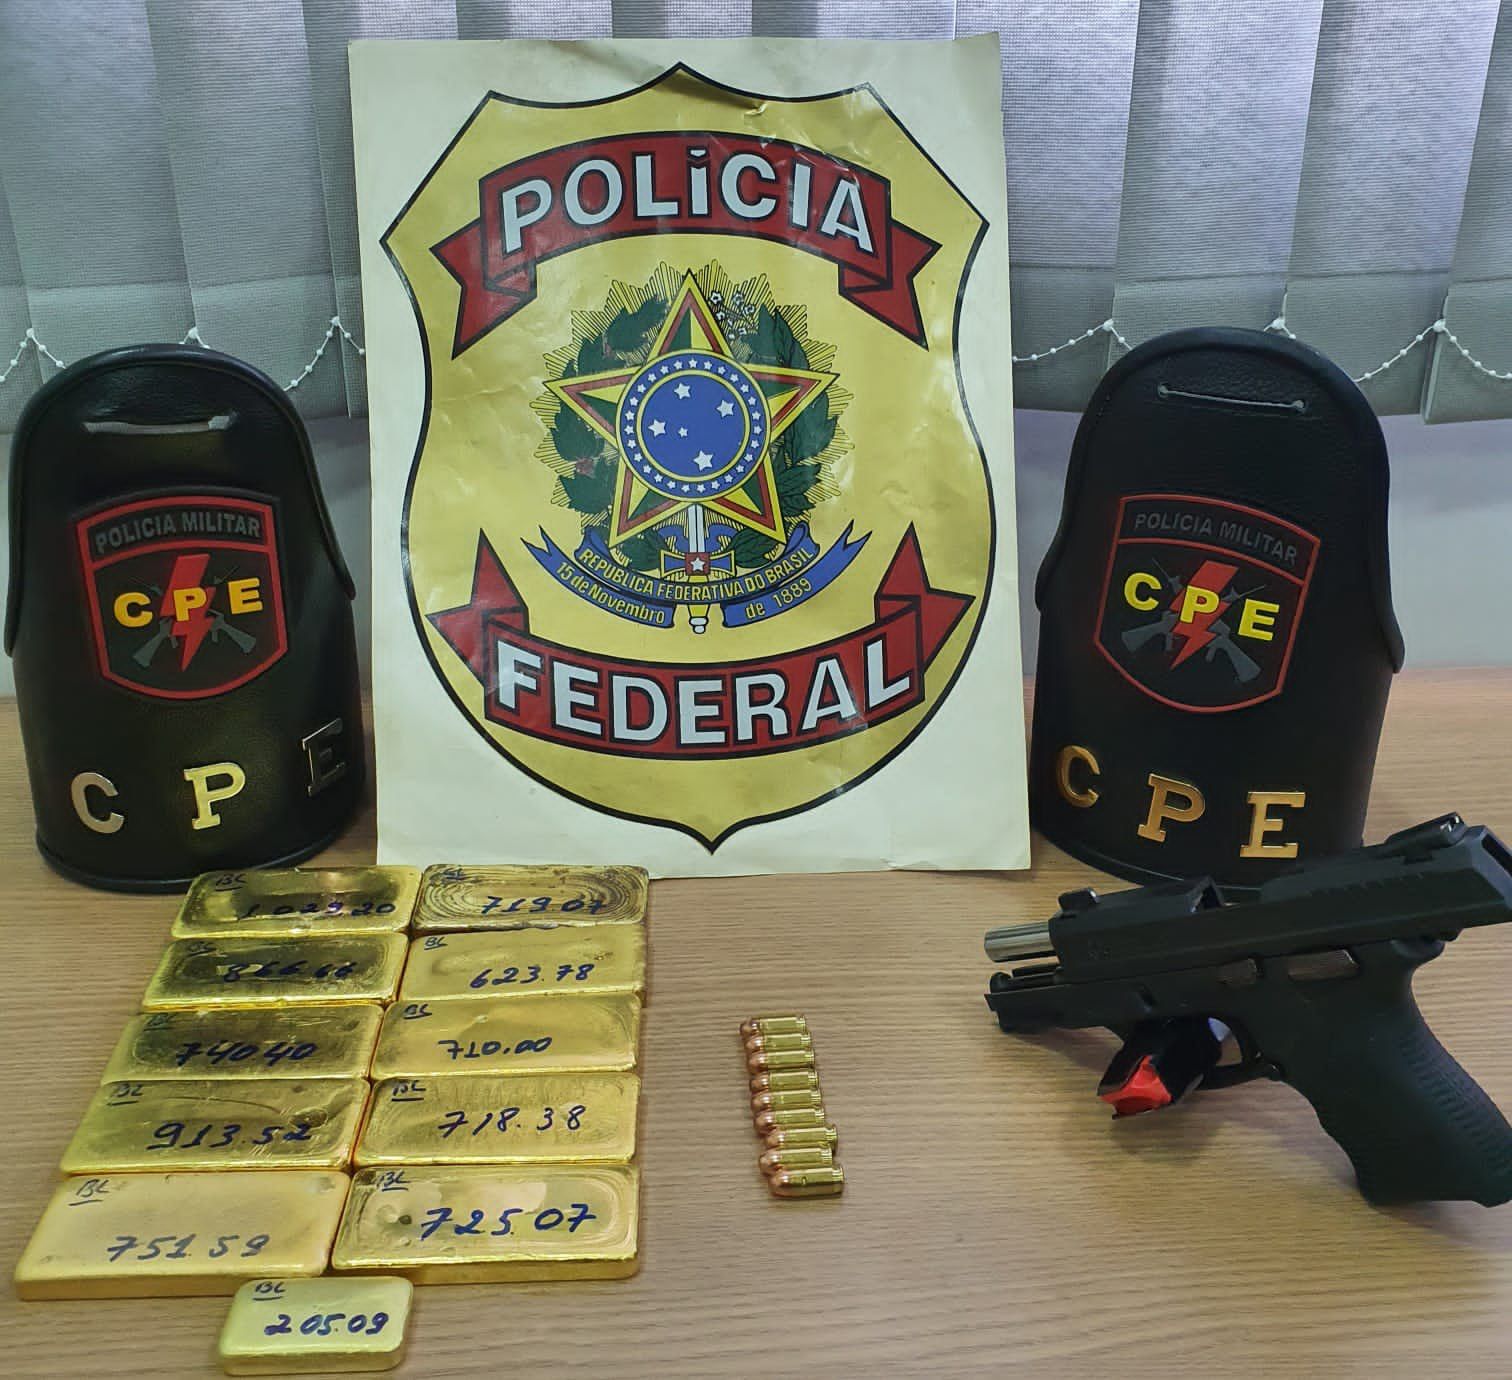 Pistola e 8 kg de ouro foram apresentados na sede da Polícia Federal, em Anápolis (Foto: Divulgação/CPE)